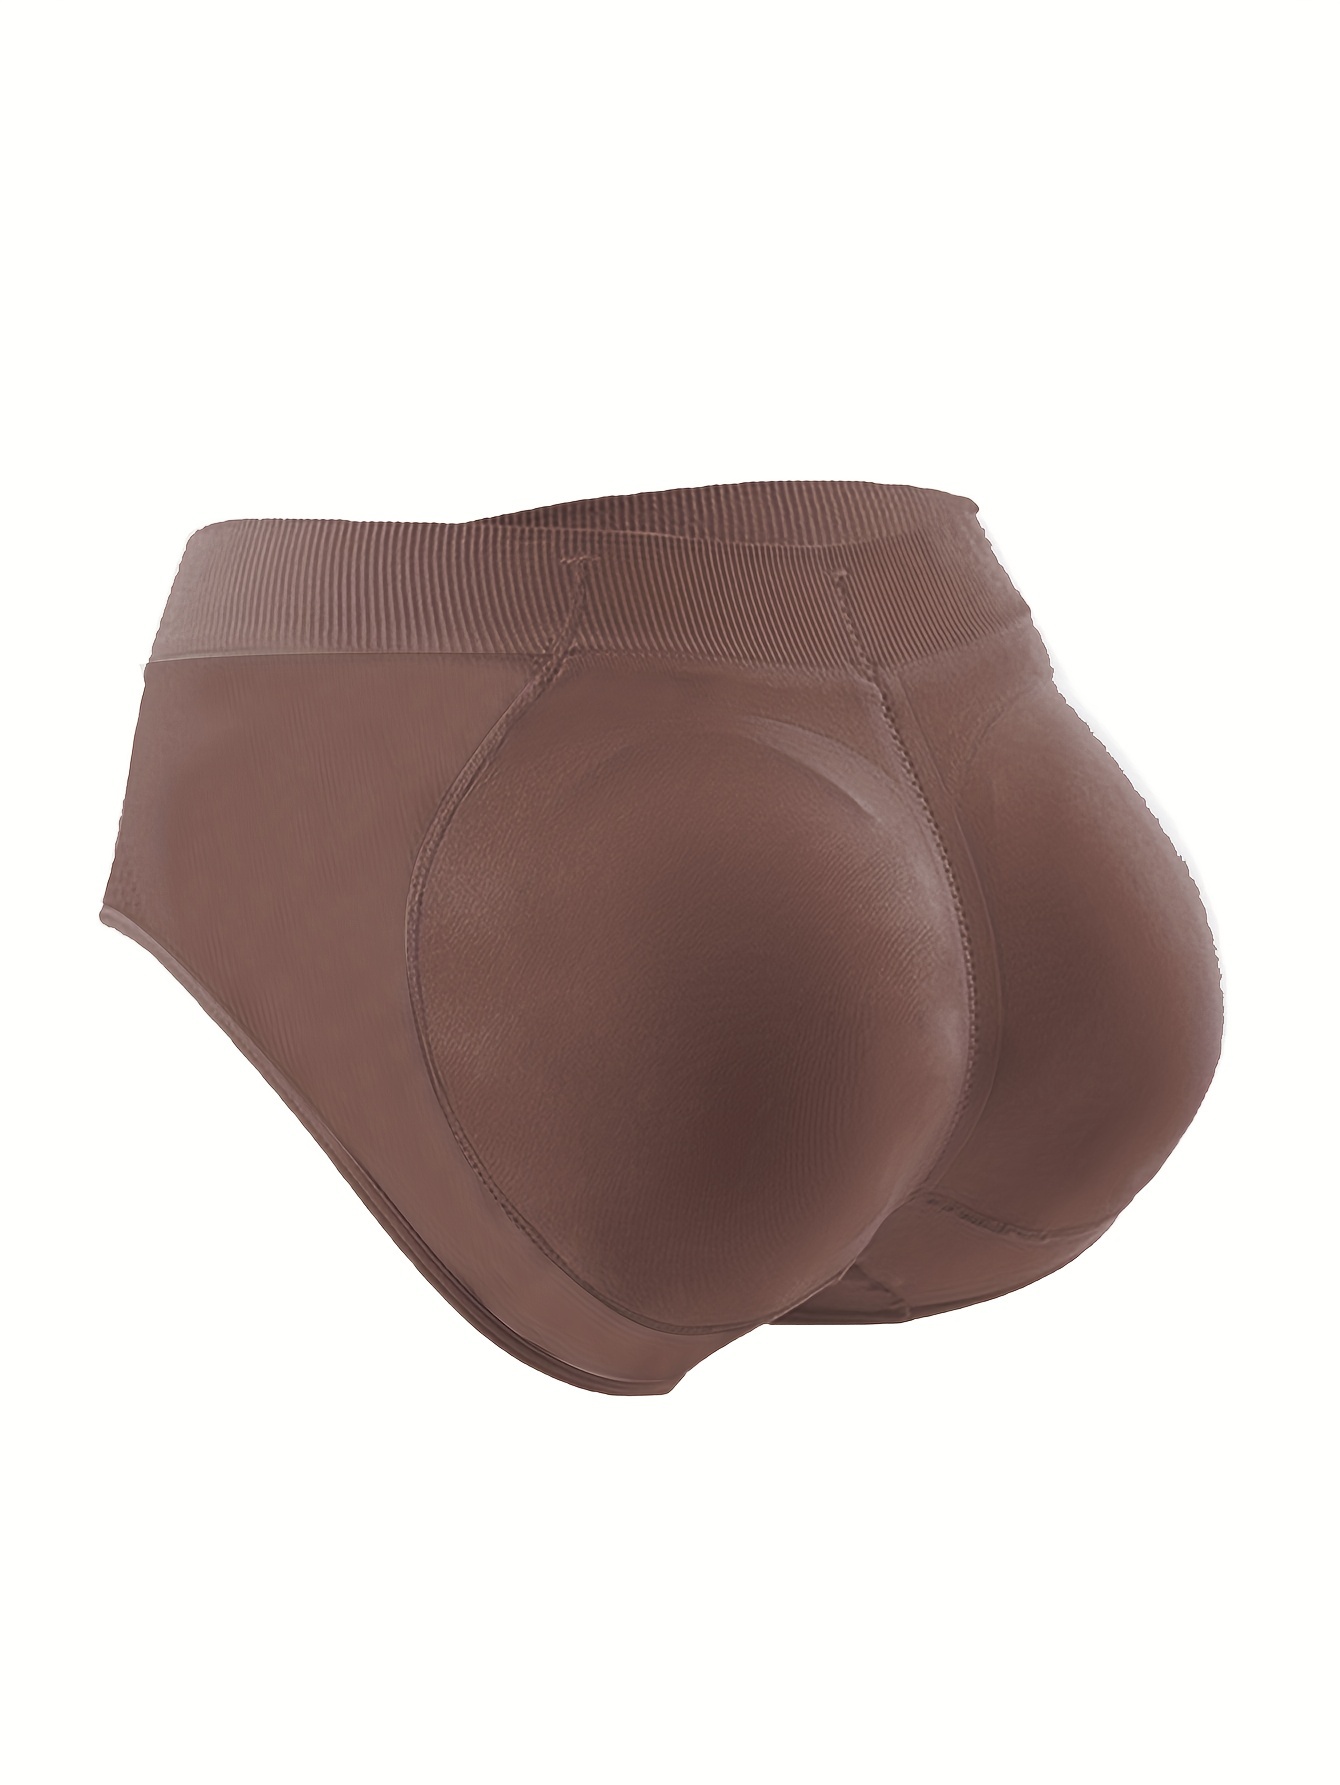 Yirtree Butt Lifter Shapewear Panties for Women Padded Underwear